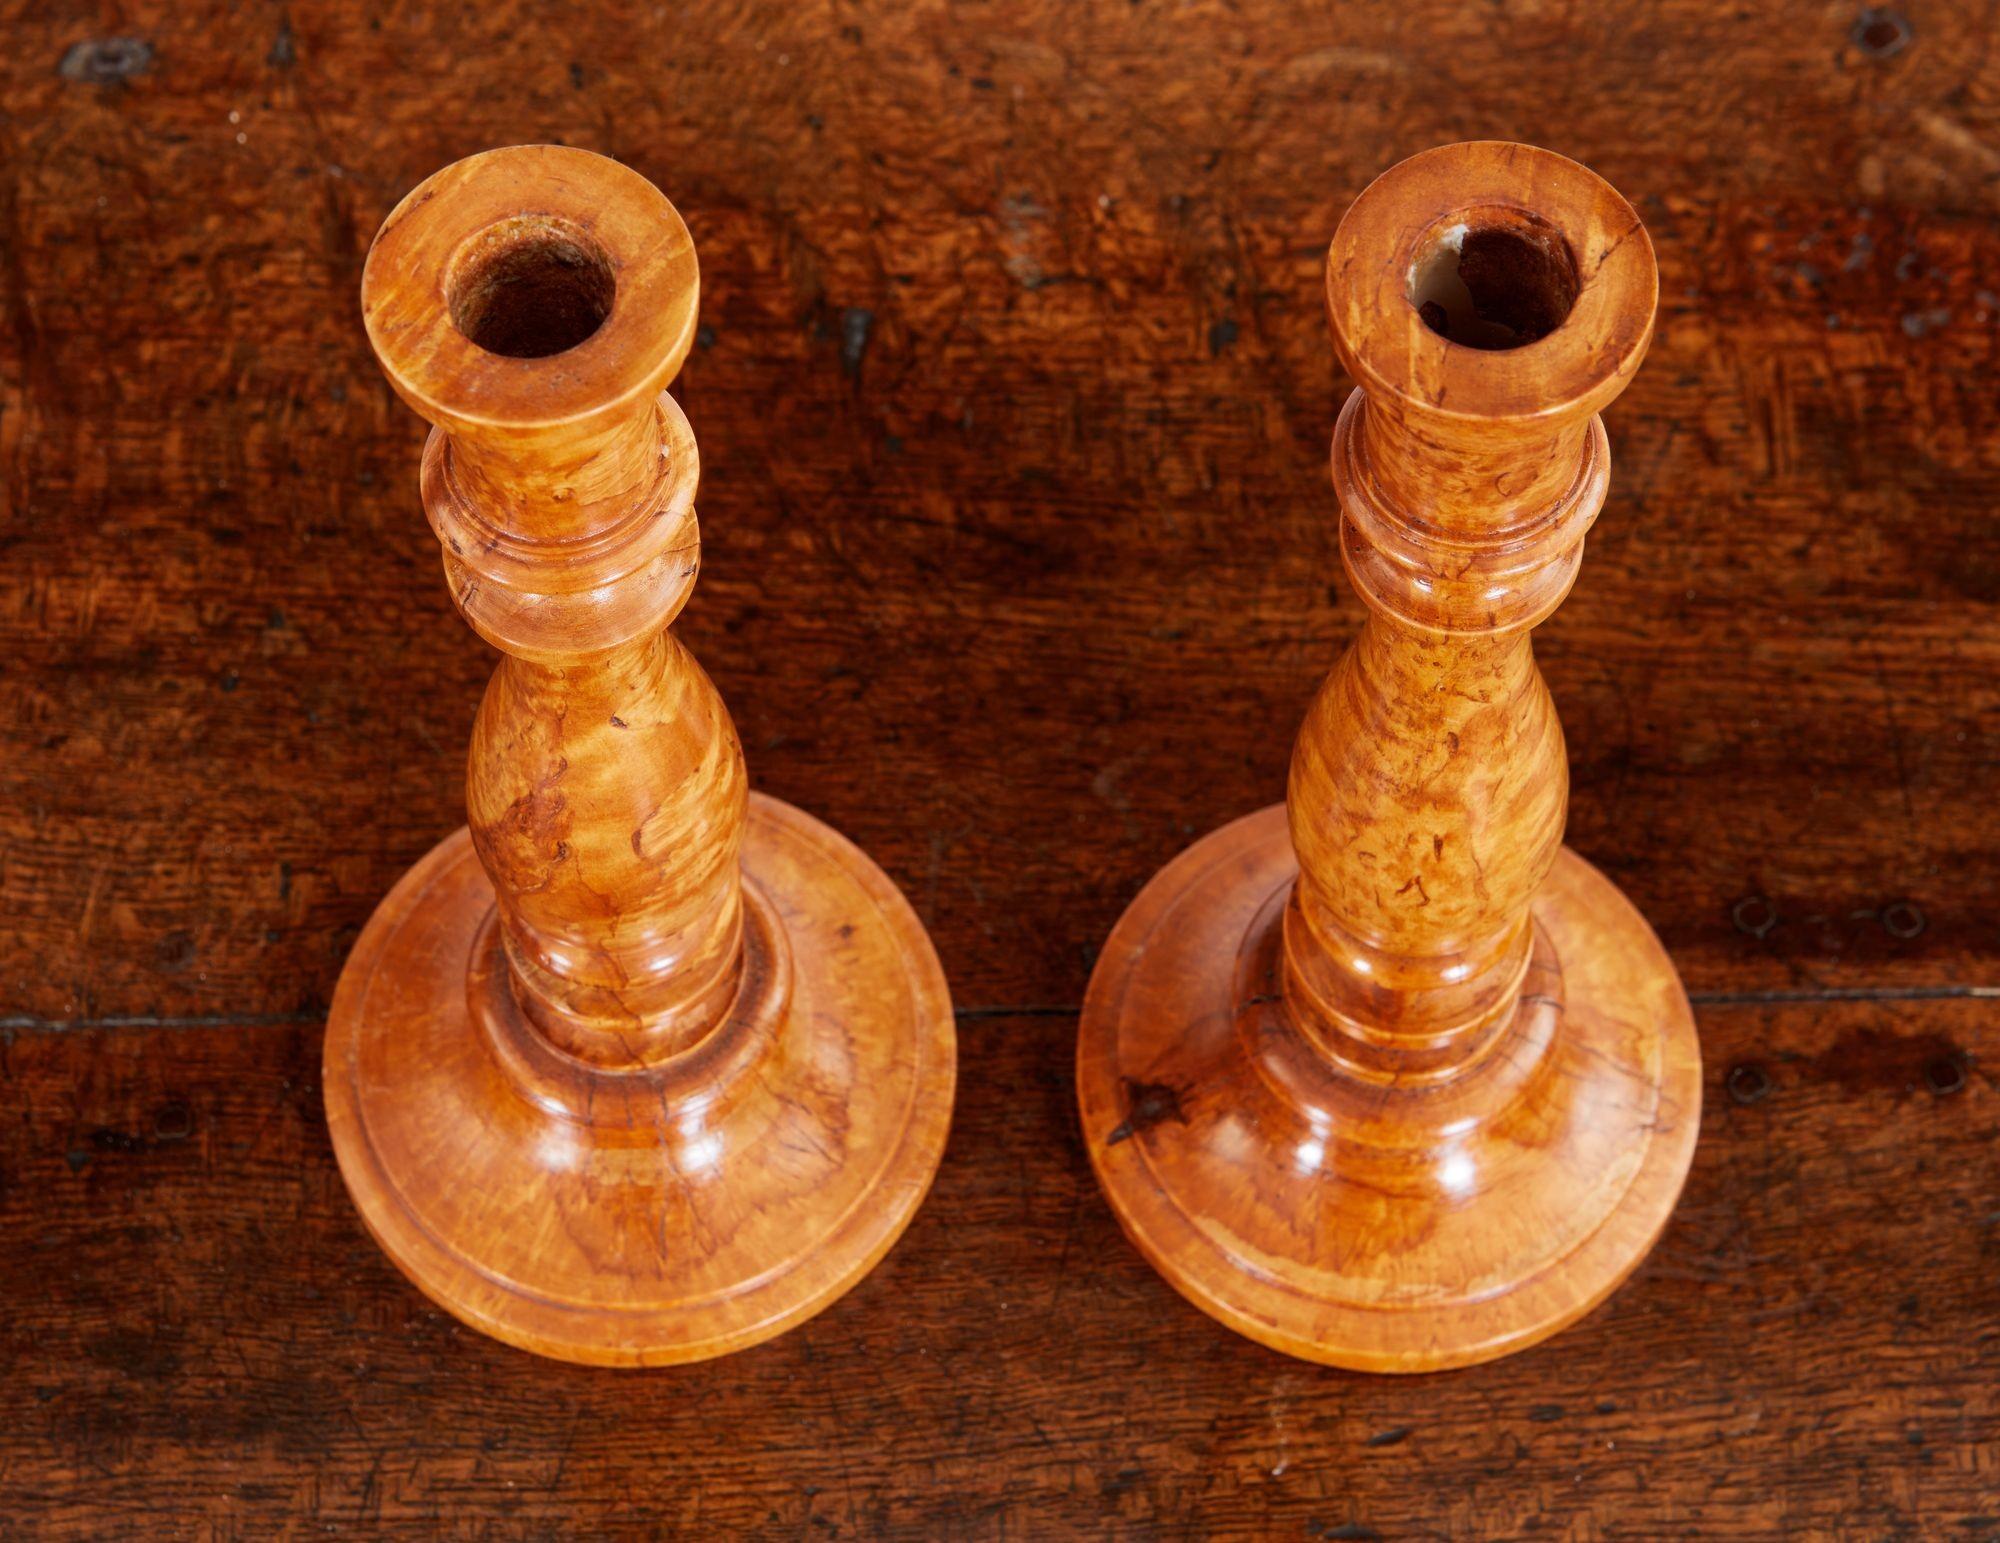 Feines Paar schwedischer Kerzenleuchter aus Maserbirke mit vasenförmigem Körper auf gedrechseltem Sockel, das Ganze mit guter, satter Farbe und hervorragender Maserung.
 
Treen